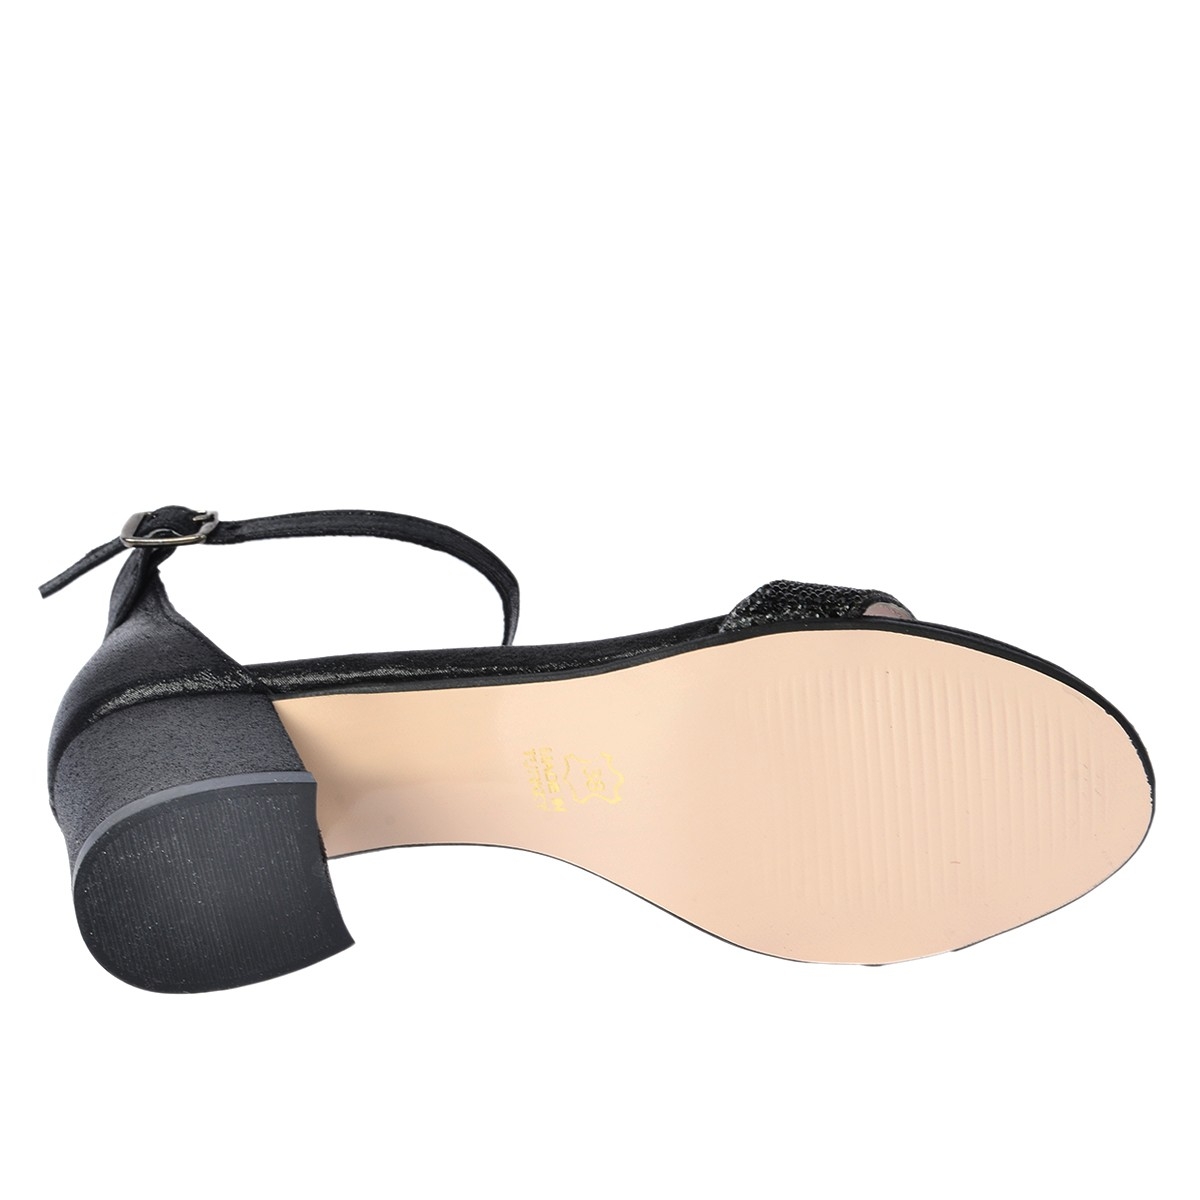 Flo 038-03 Taşlı 5 Cm Topuk Bayan Sandalet Ayakkabı SİYAH. 1